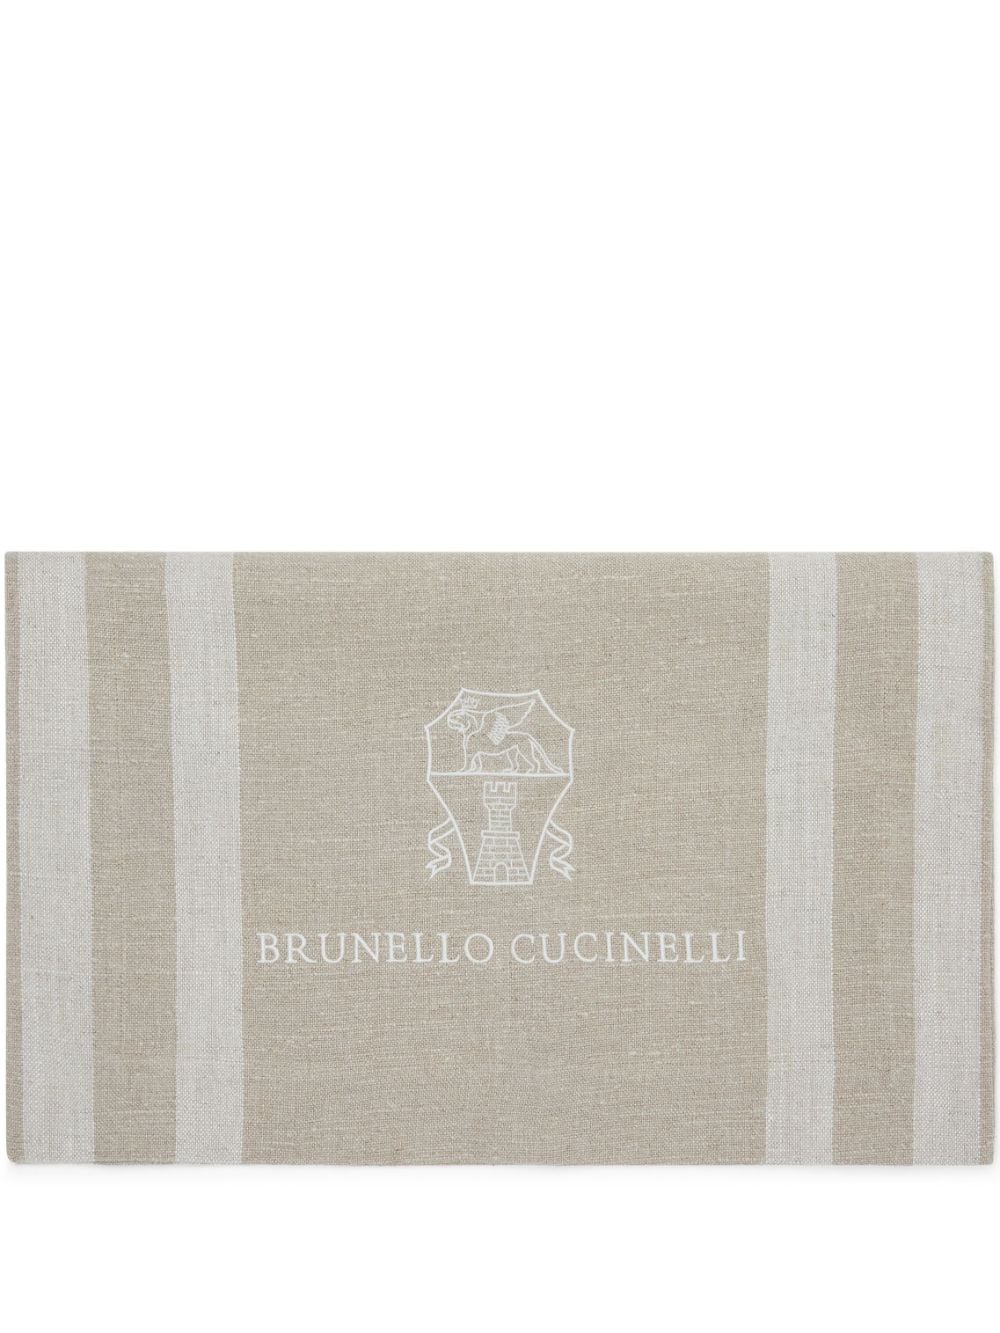 Brunello Cucinelli striped linen runner - Neutrals von Brunello Cucinelli